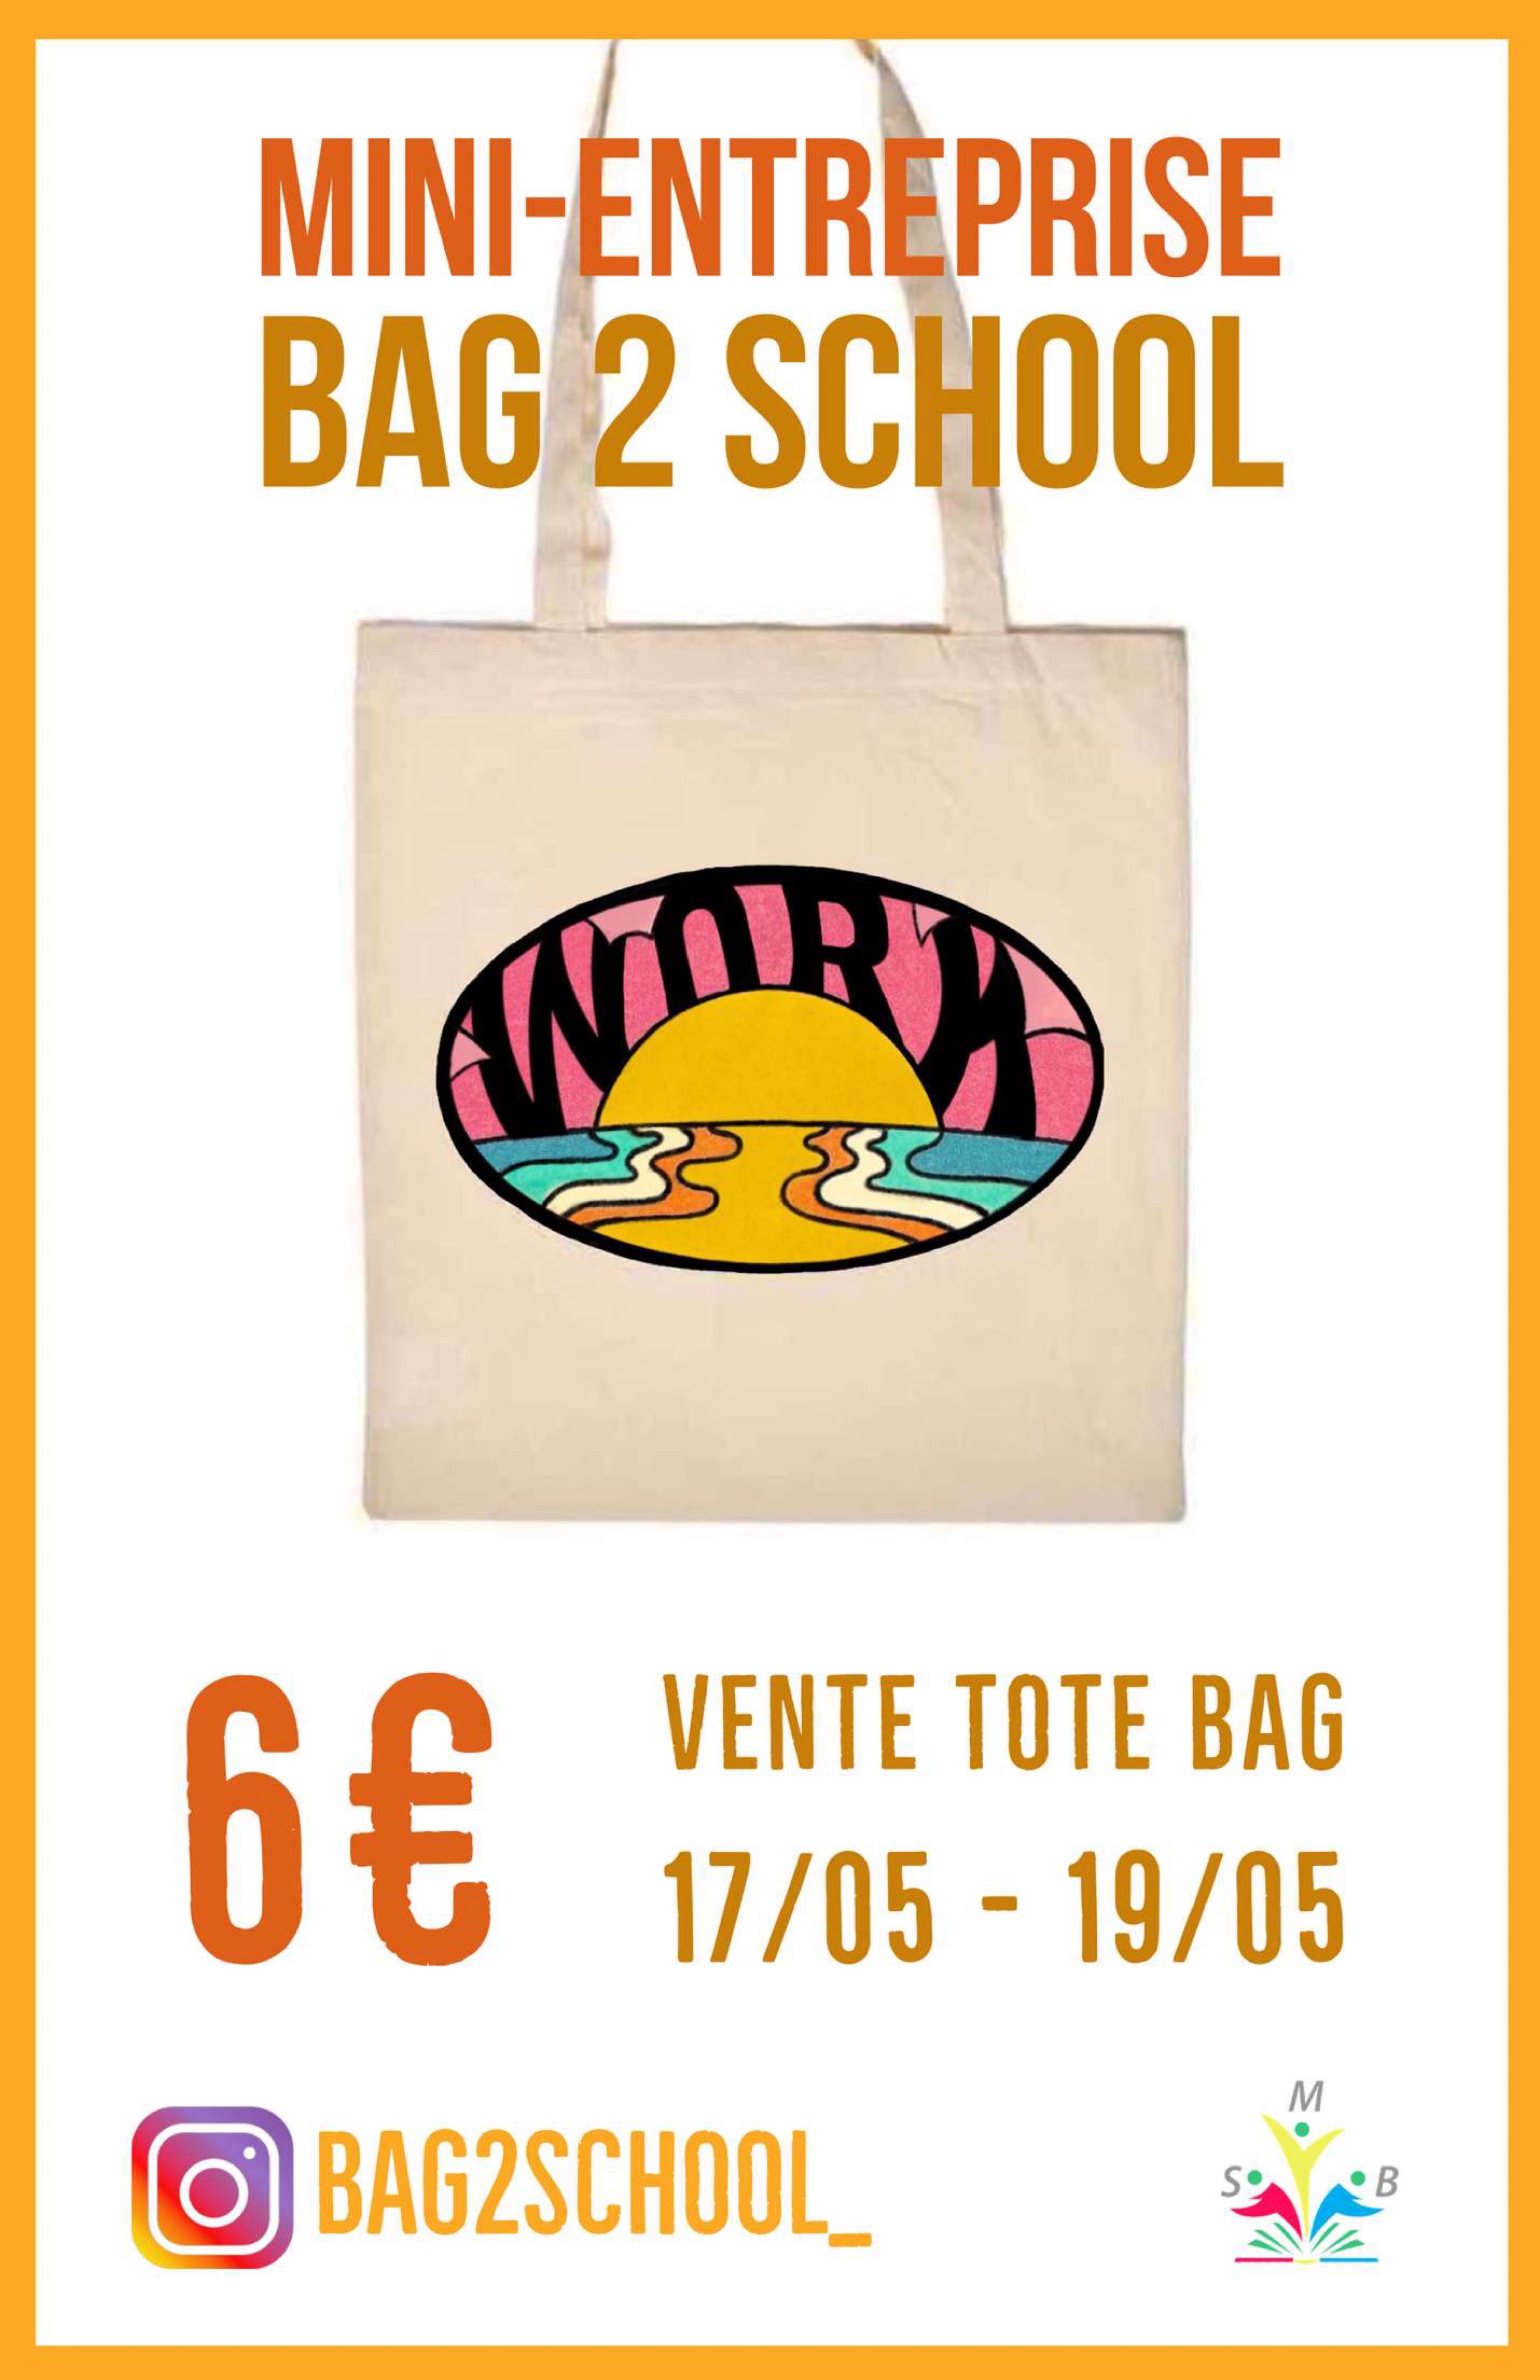 Affiche de vente de Tote Bags par la mini-entreprise